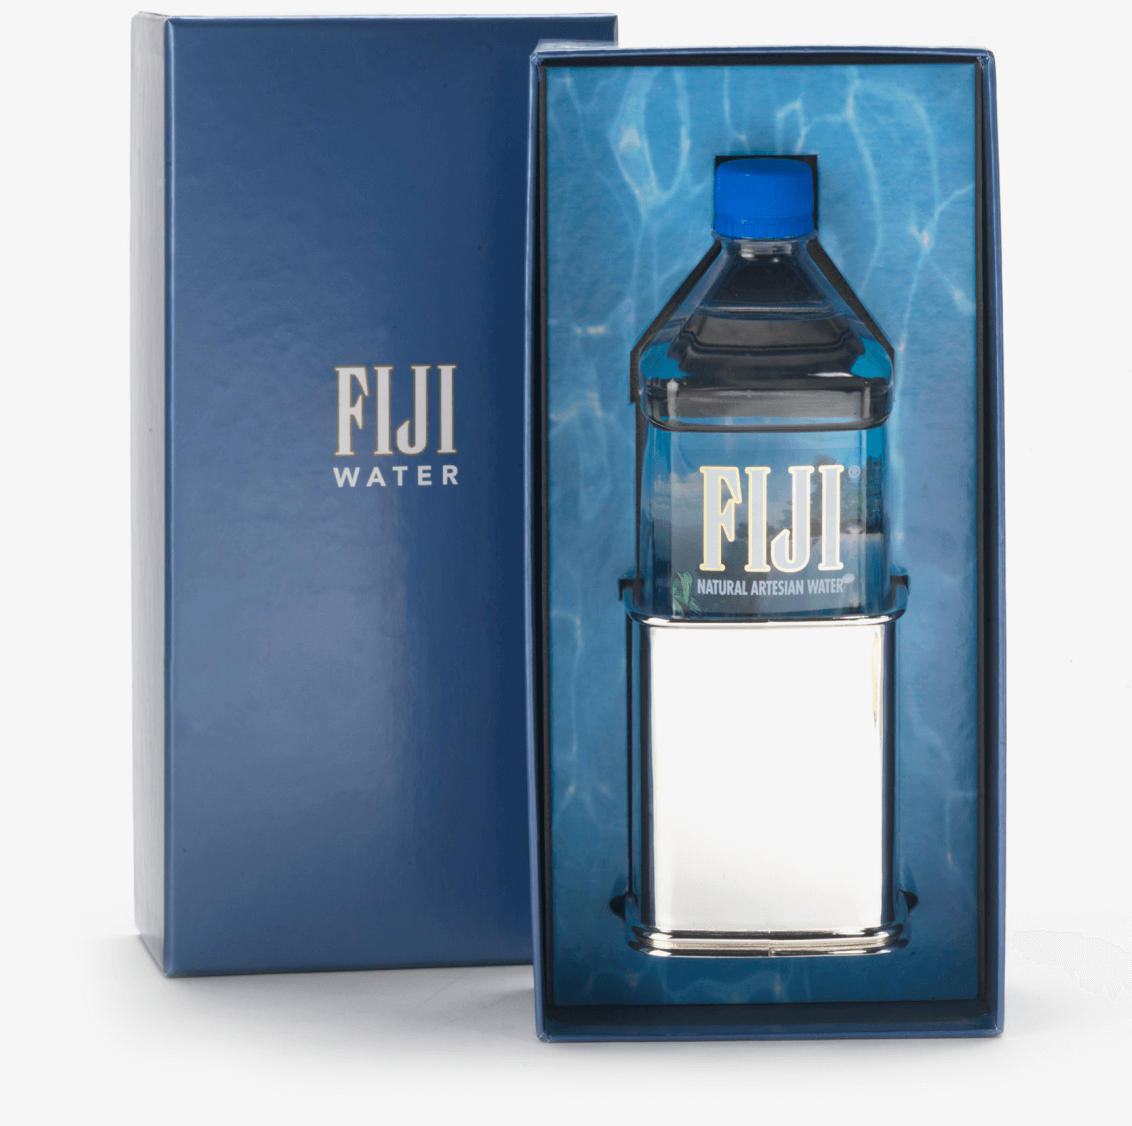 A bottle of fiji water in a blue box.